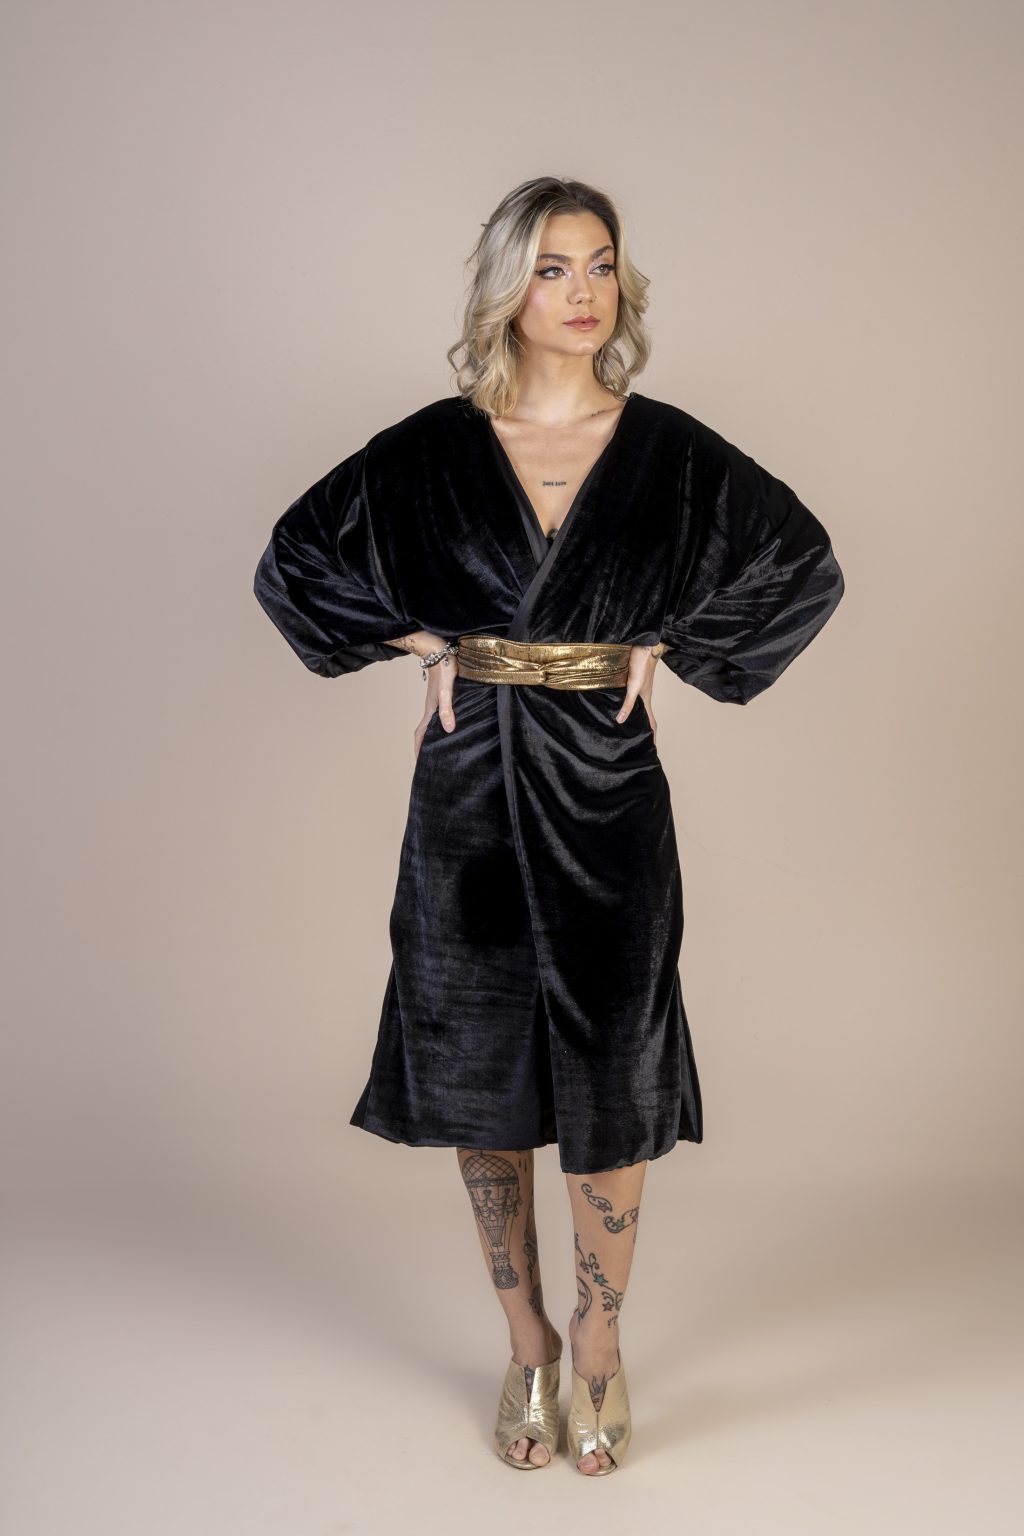 Mulher loira usando um kimono preto veludo com bordado nas costas praticidade conforto elegância exclusivo joker maria sanz kimono quimono